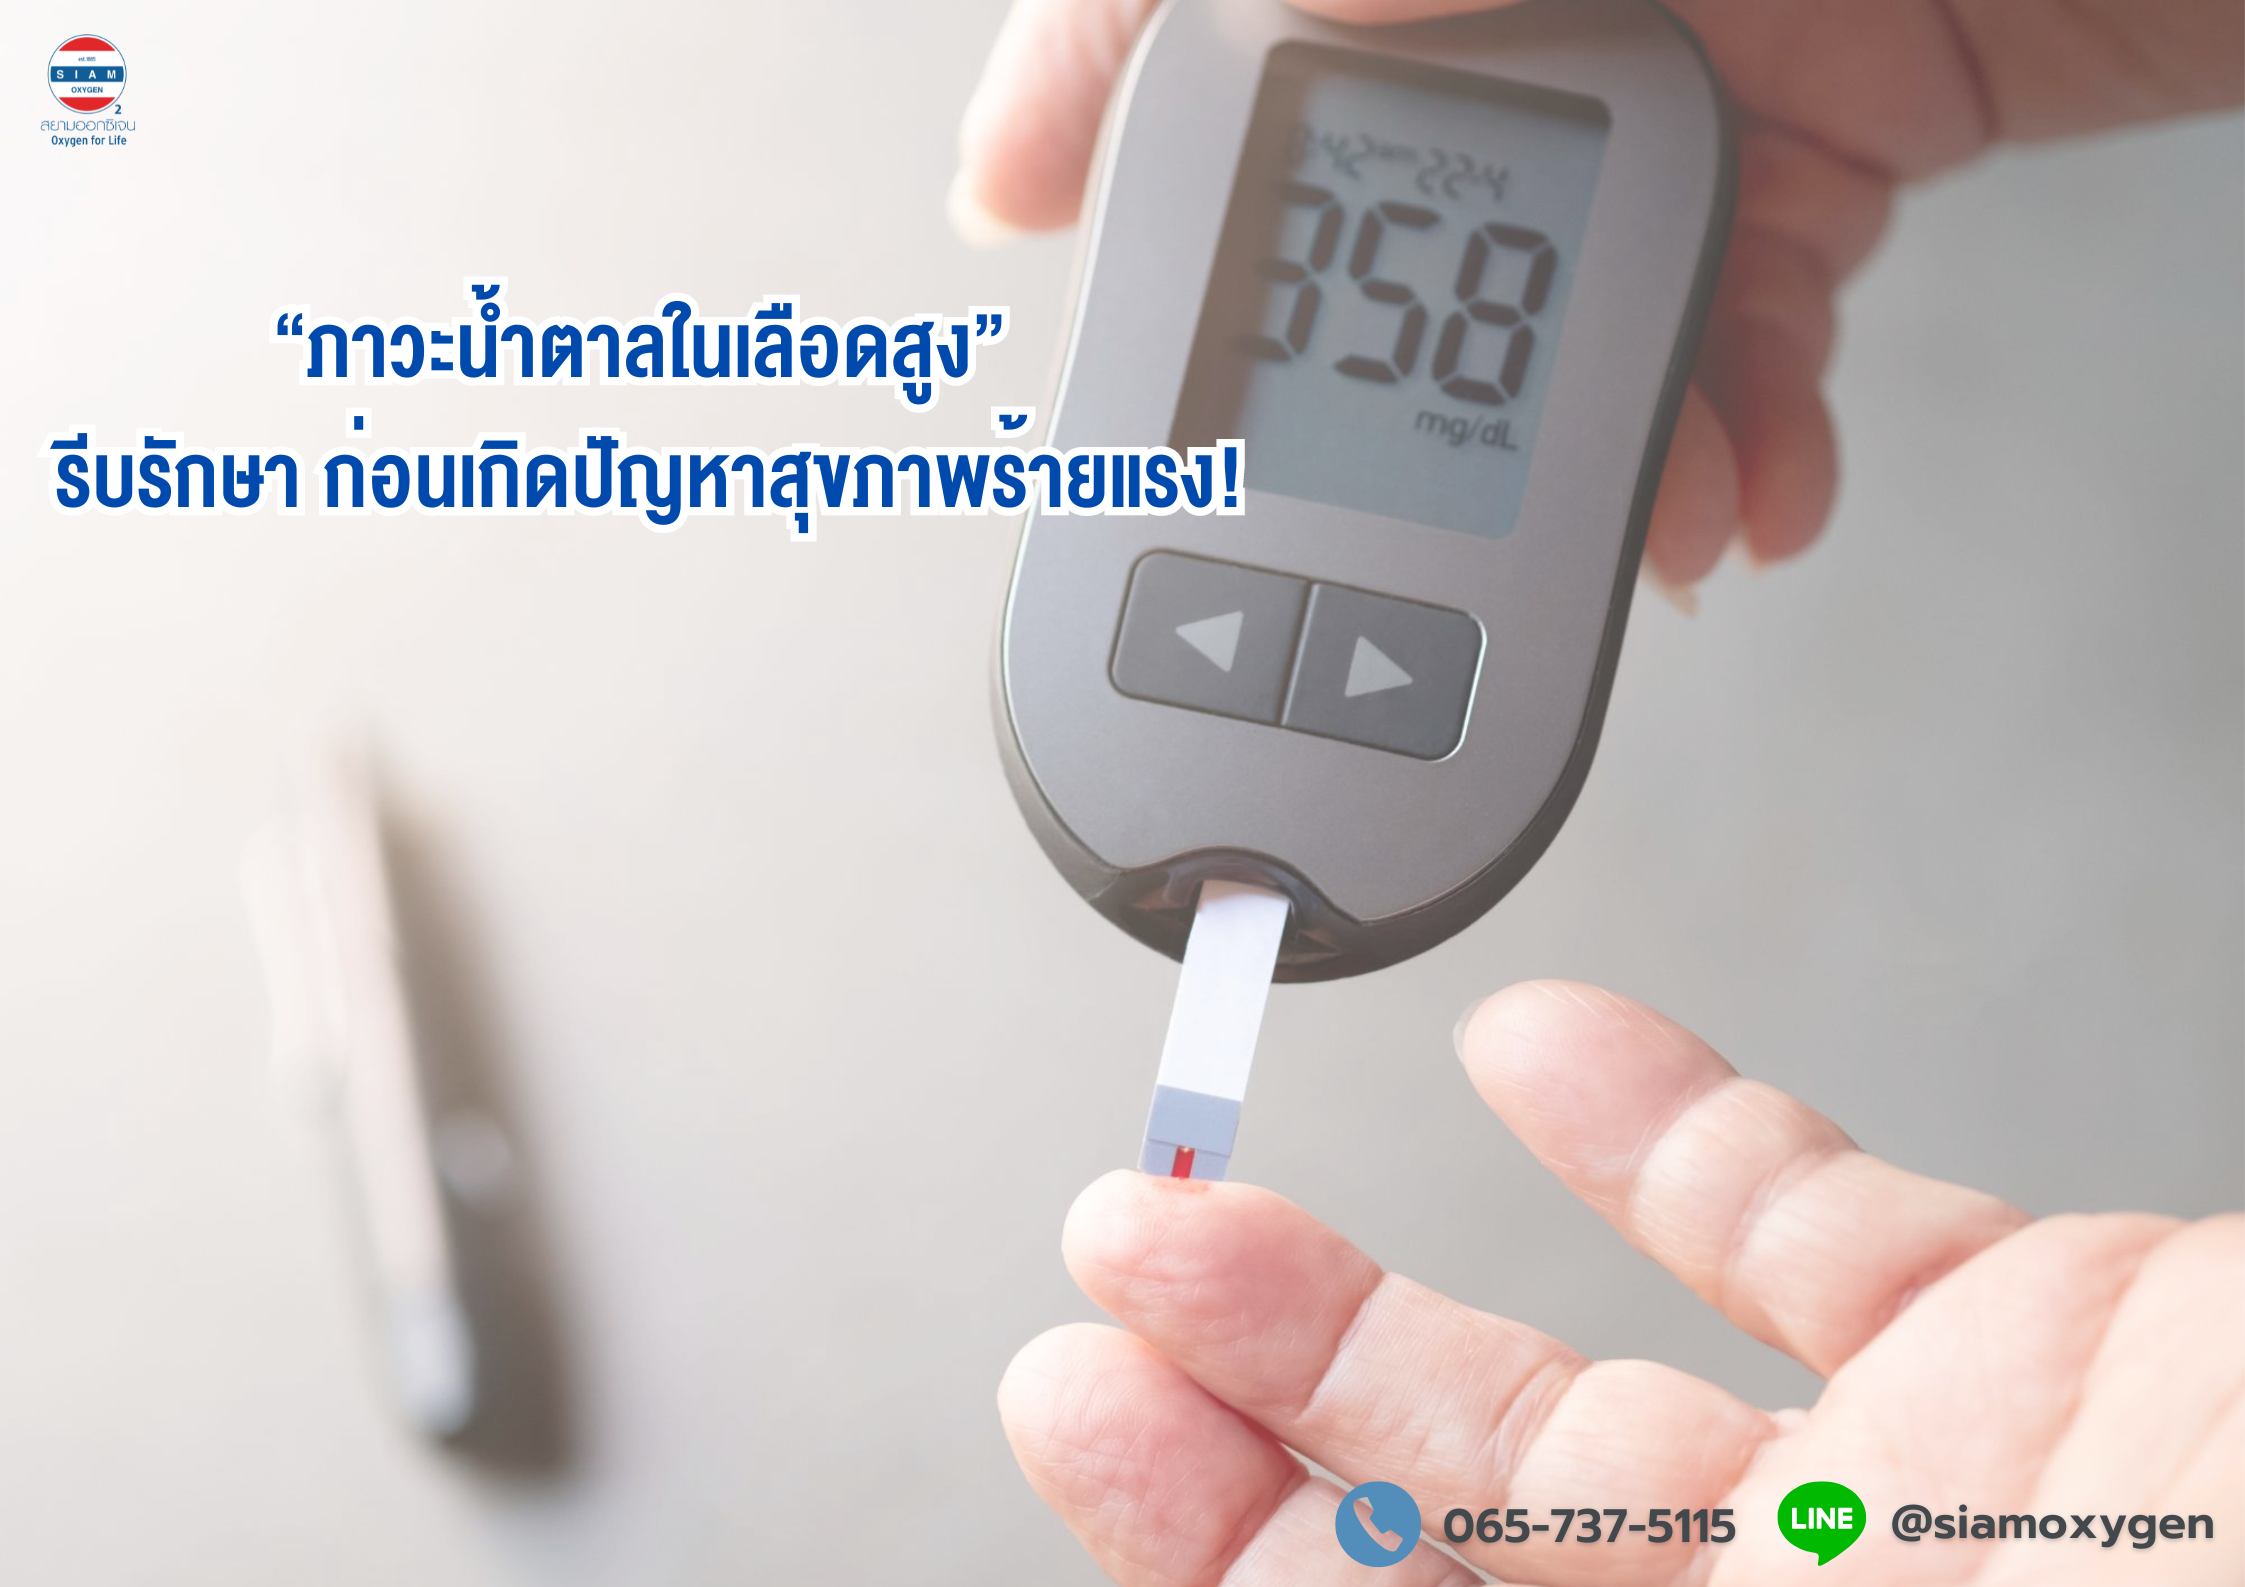 “ภาวะน้ำตาลในเลือดสูง” รีบรักษา ก่อนเกิดปัญหาสุขภาพร้ายแรง!